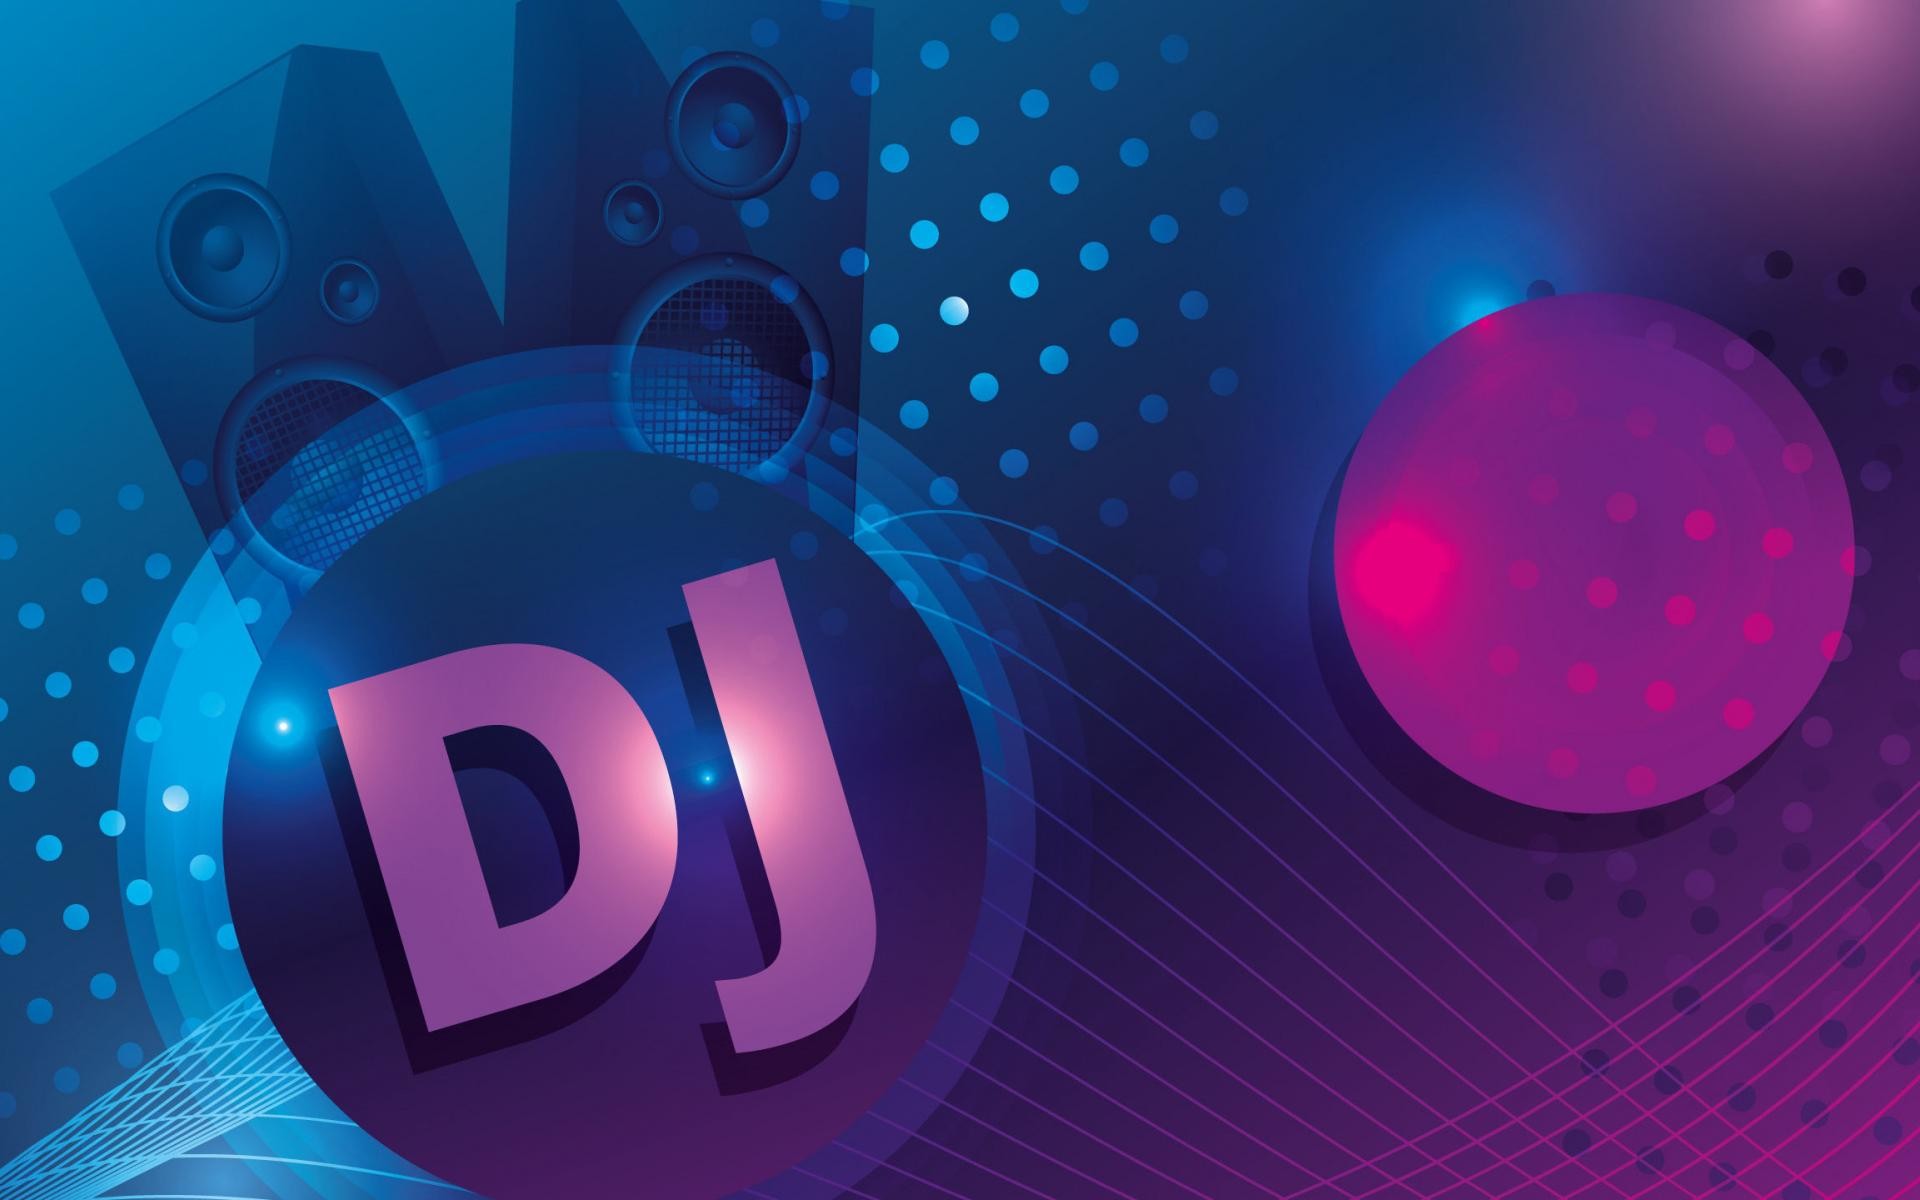 virtual dj logo wallpaper